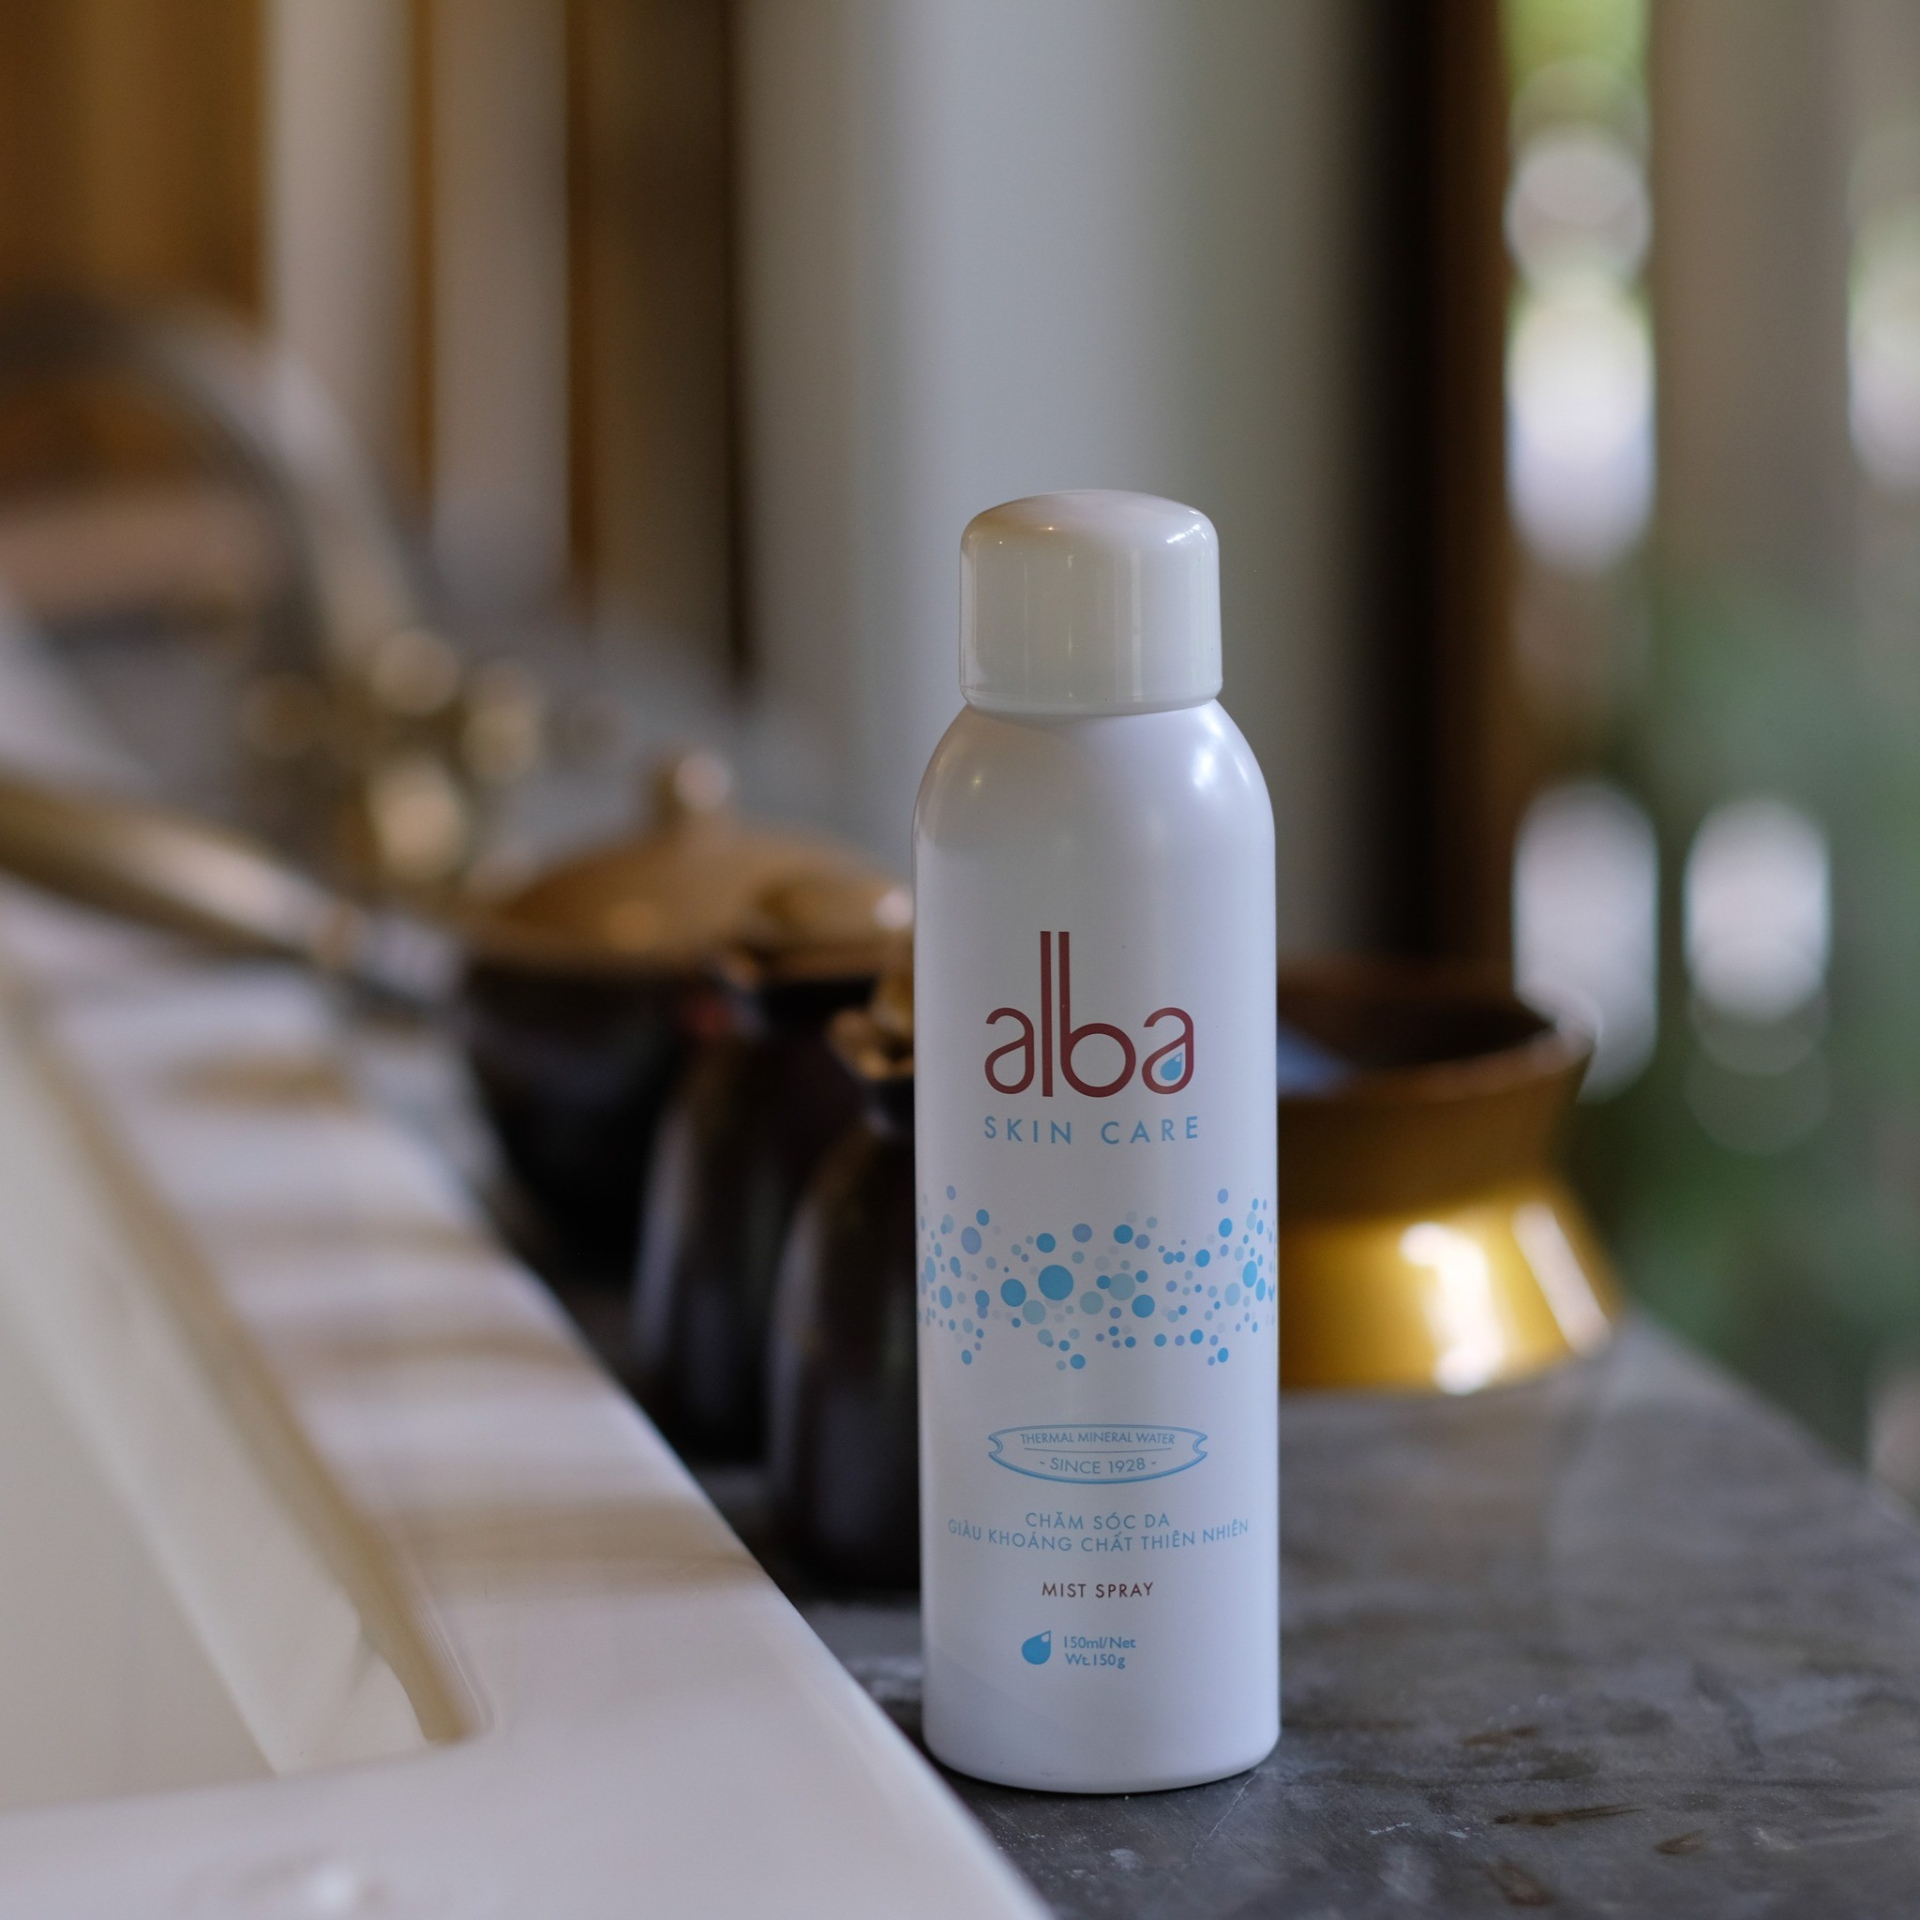 Xịt khoáng Alba Skincare - Sản phẩm chăm sóc da từ nước khoáng thiên nhiên - ảnh 2